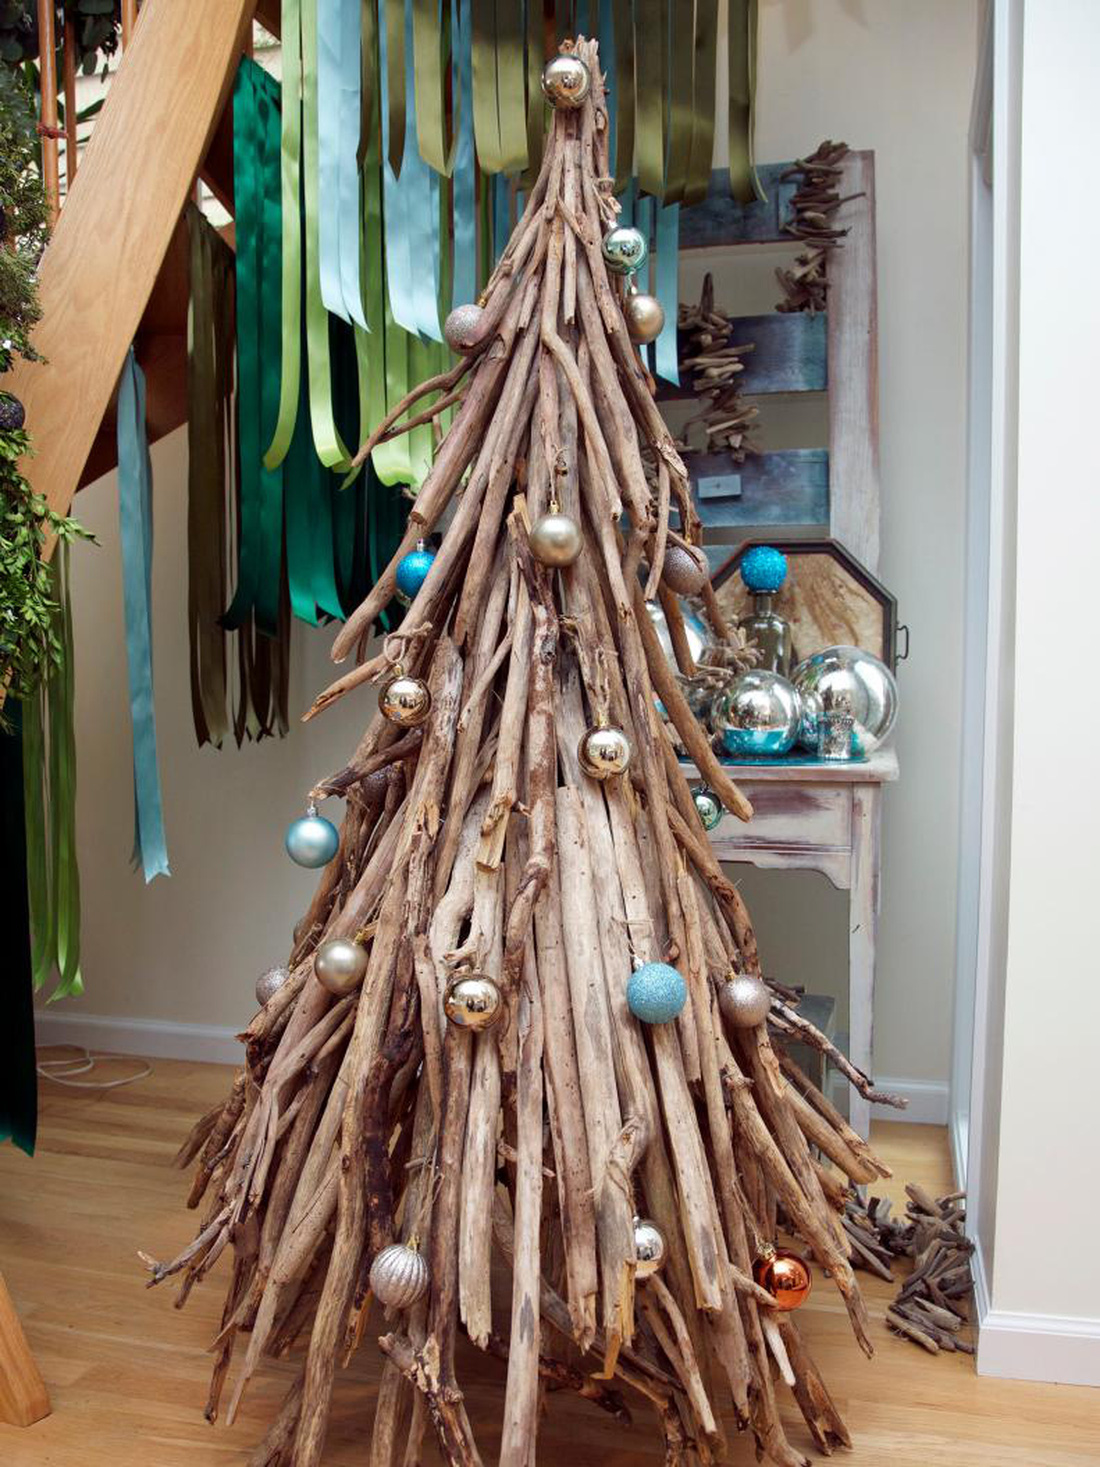 Kỷ niệm Giáng sinh với cây thông mang hơi thở vùng ven biển - Ảnh: HGTV